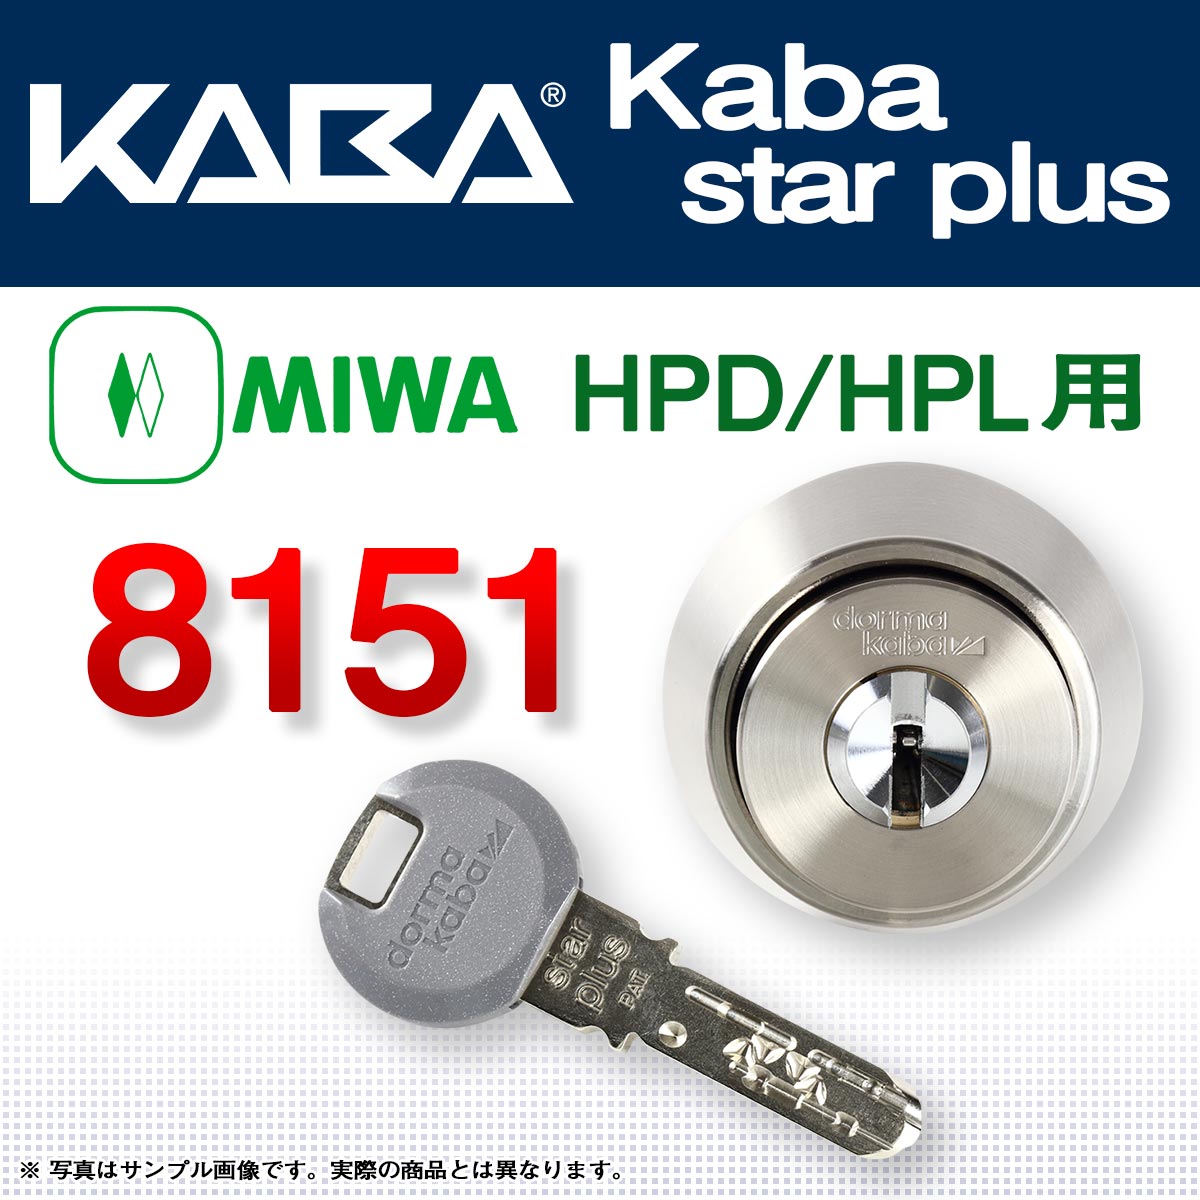 カバスタープラス 8151 【MIWA HPD,HPL】美和ロック HPD,HPL交換用シリンダーが激安最安値